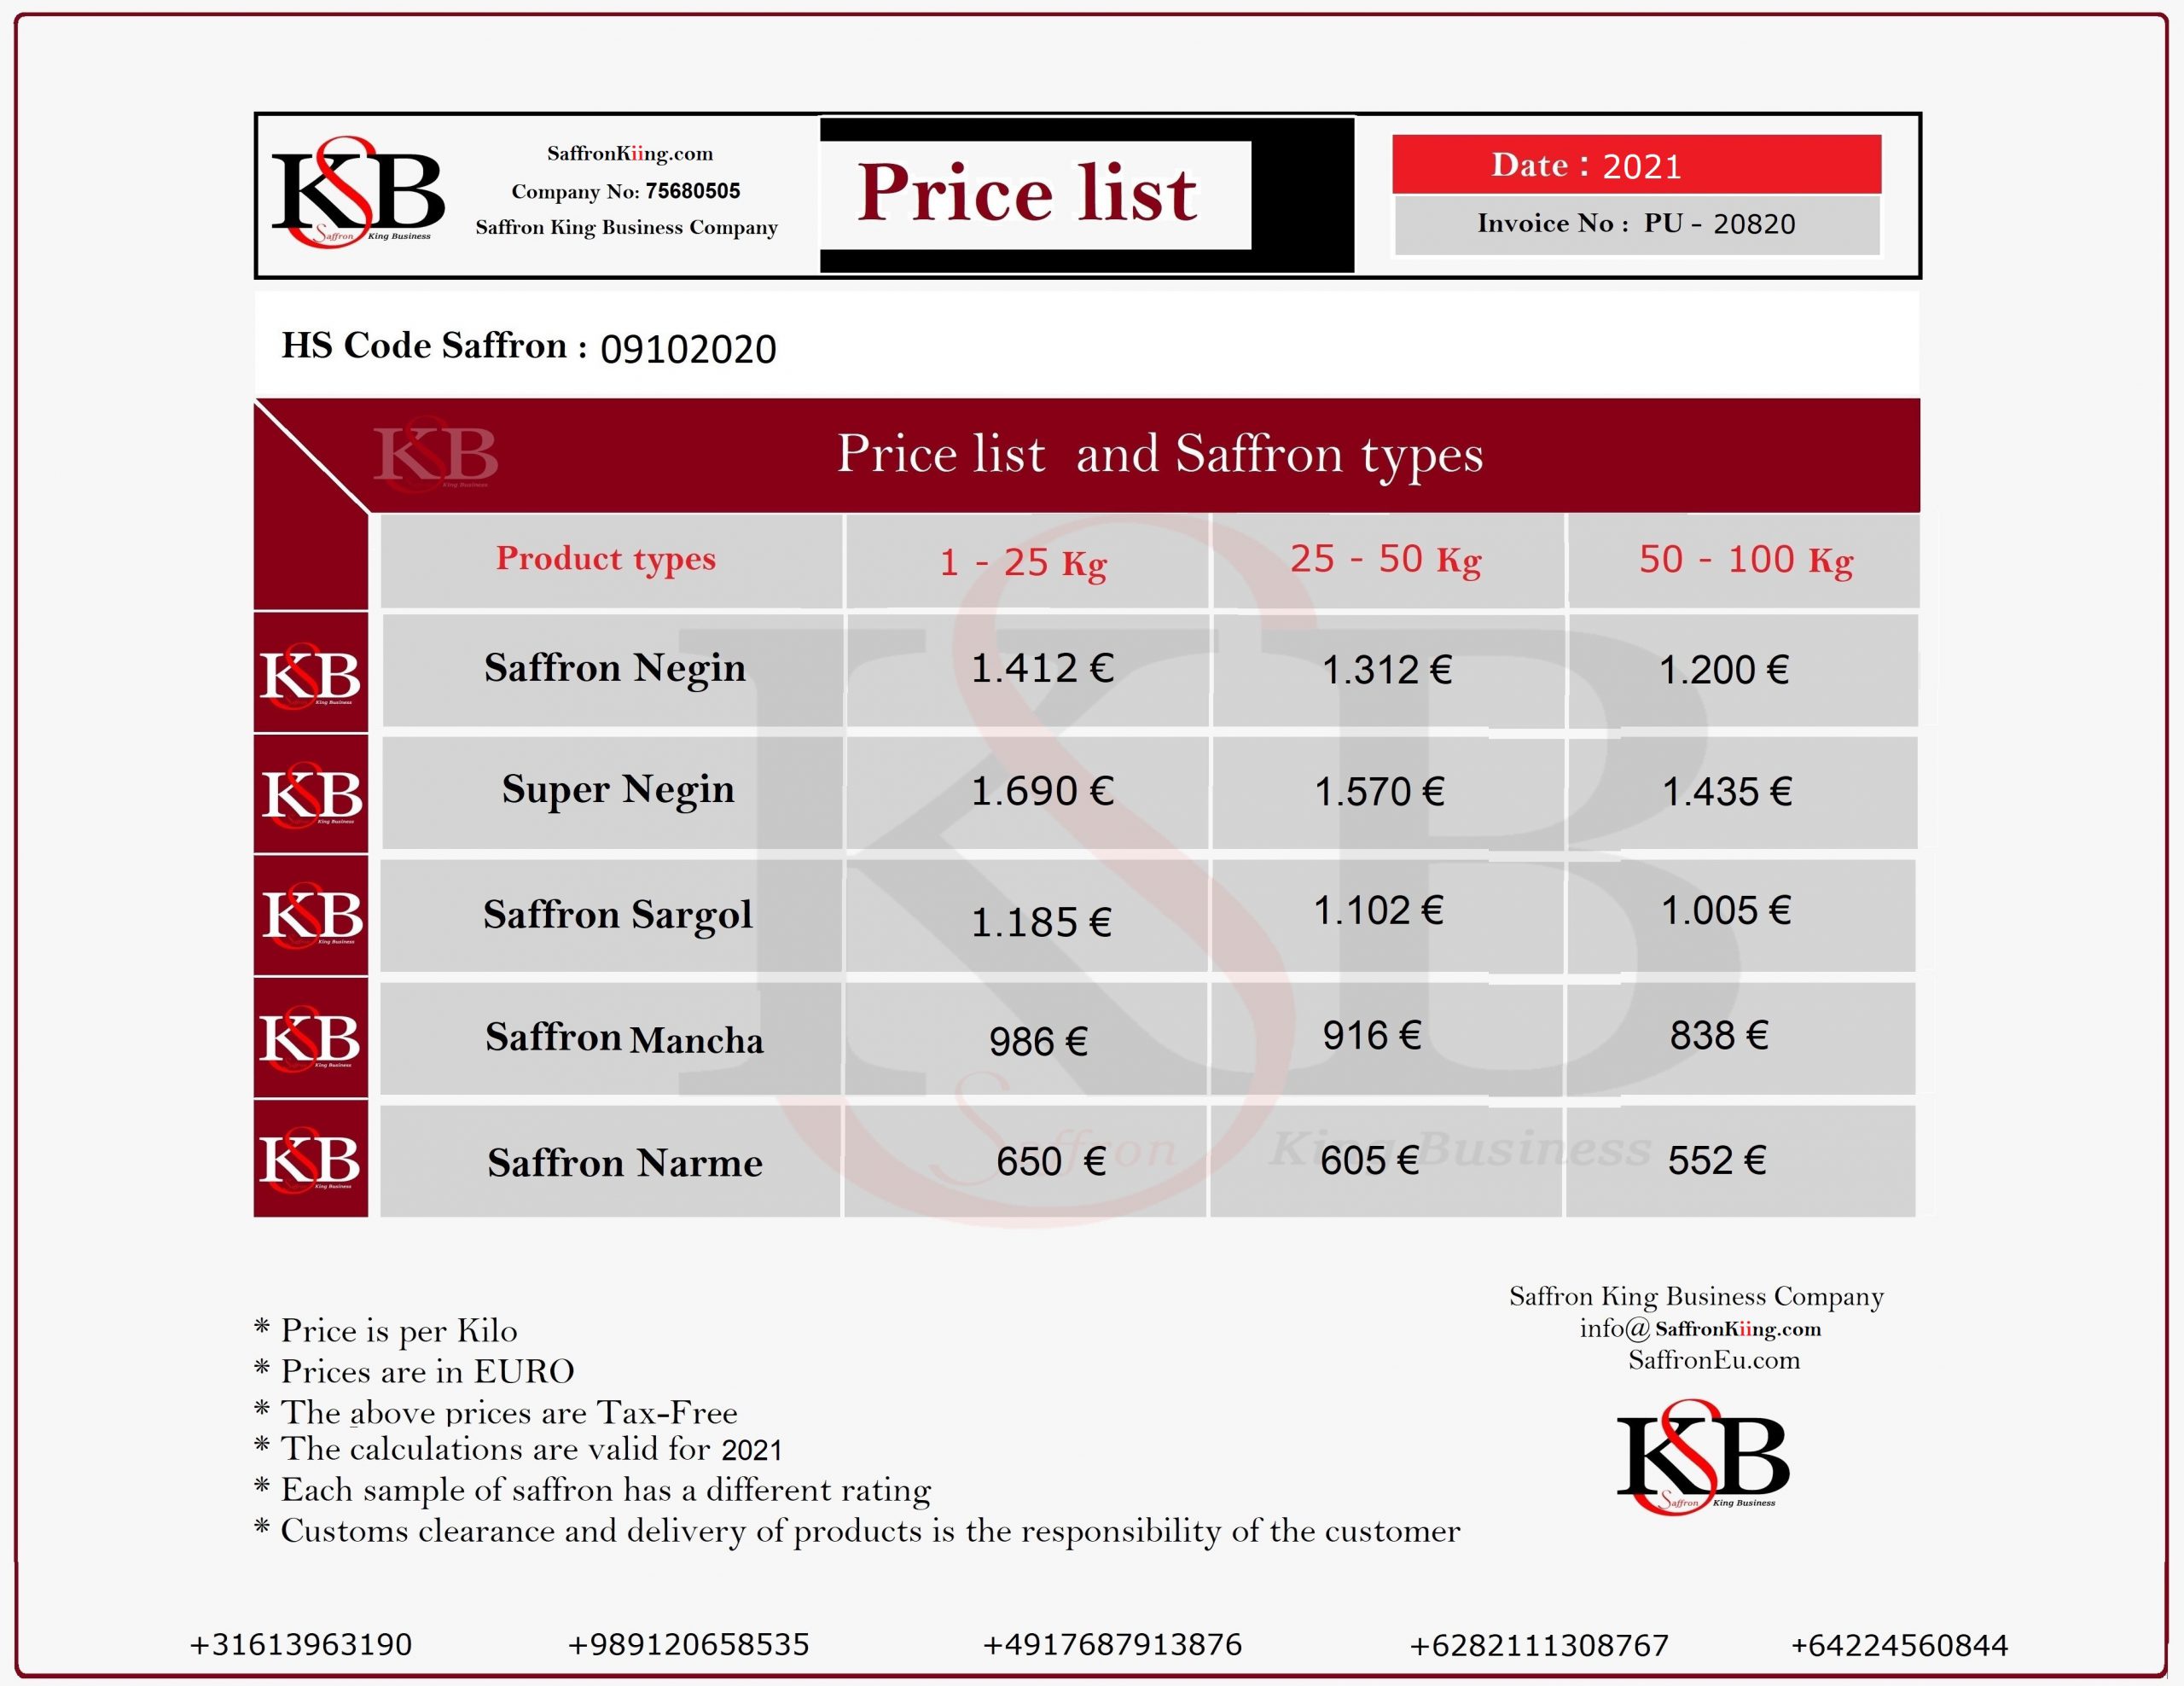  Purchase price of saffron per kilo  